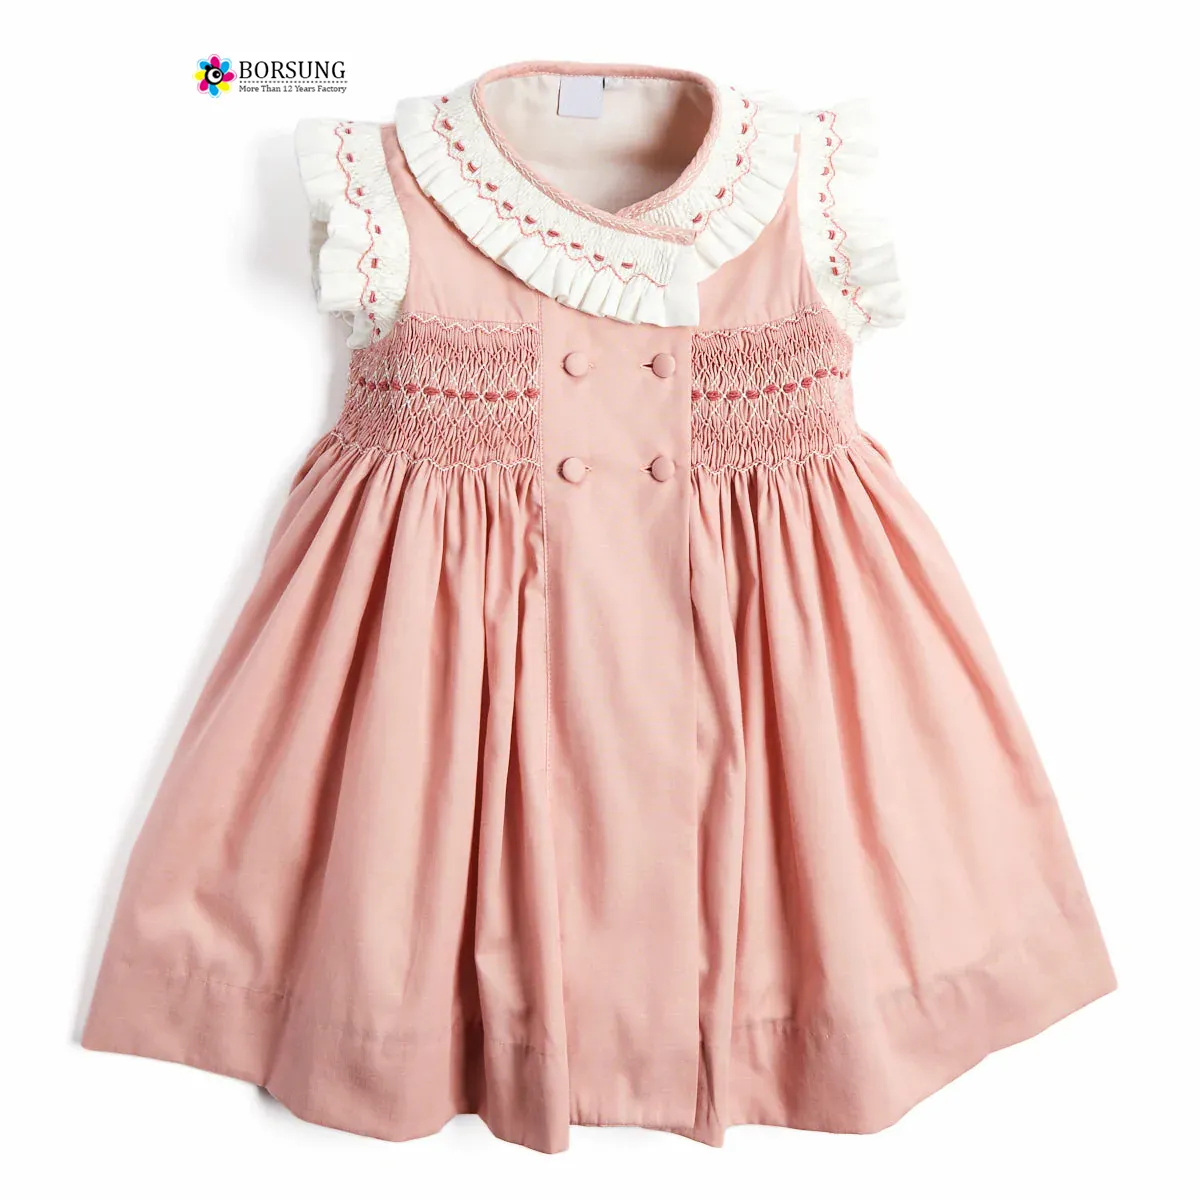 Wholesale New Fashion Custom Children Clothing Pleated Ruffled Sleeve Girls Pink Smocked Dress